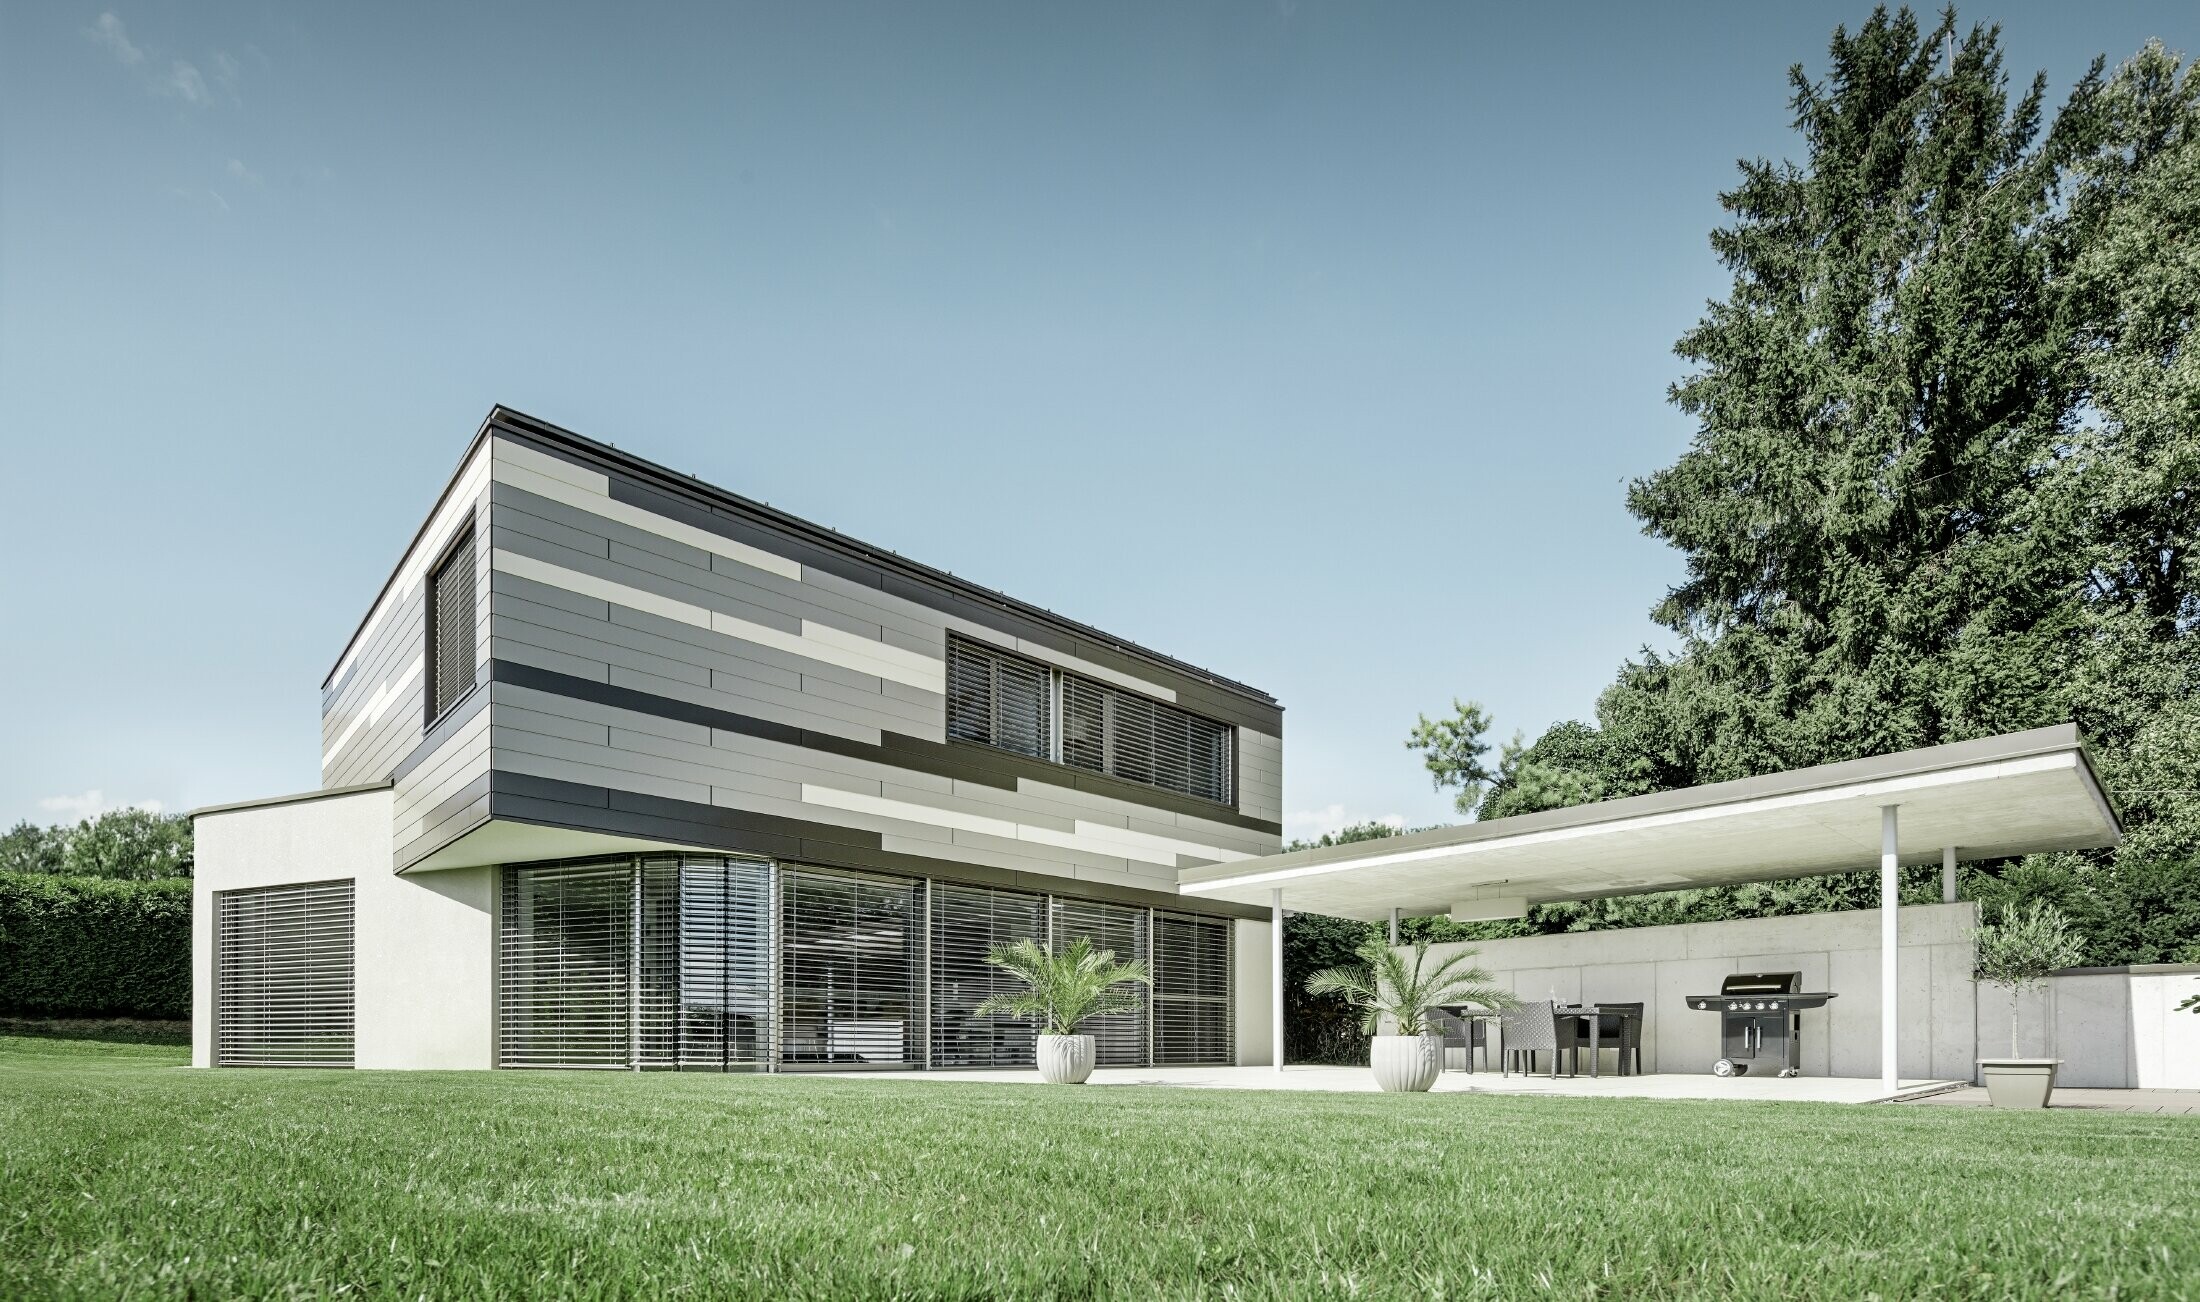 Modernes Einfamilienhaus mit Flachdach und überdachter Terrasse mit einer individuell gestalteten Aluminiumfassade aus Sidings in braun, bronze und elfenbein von PREFA